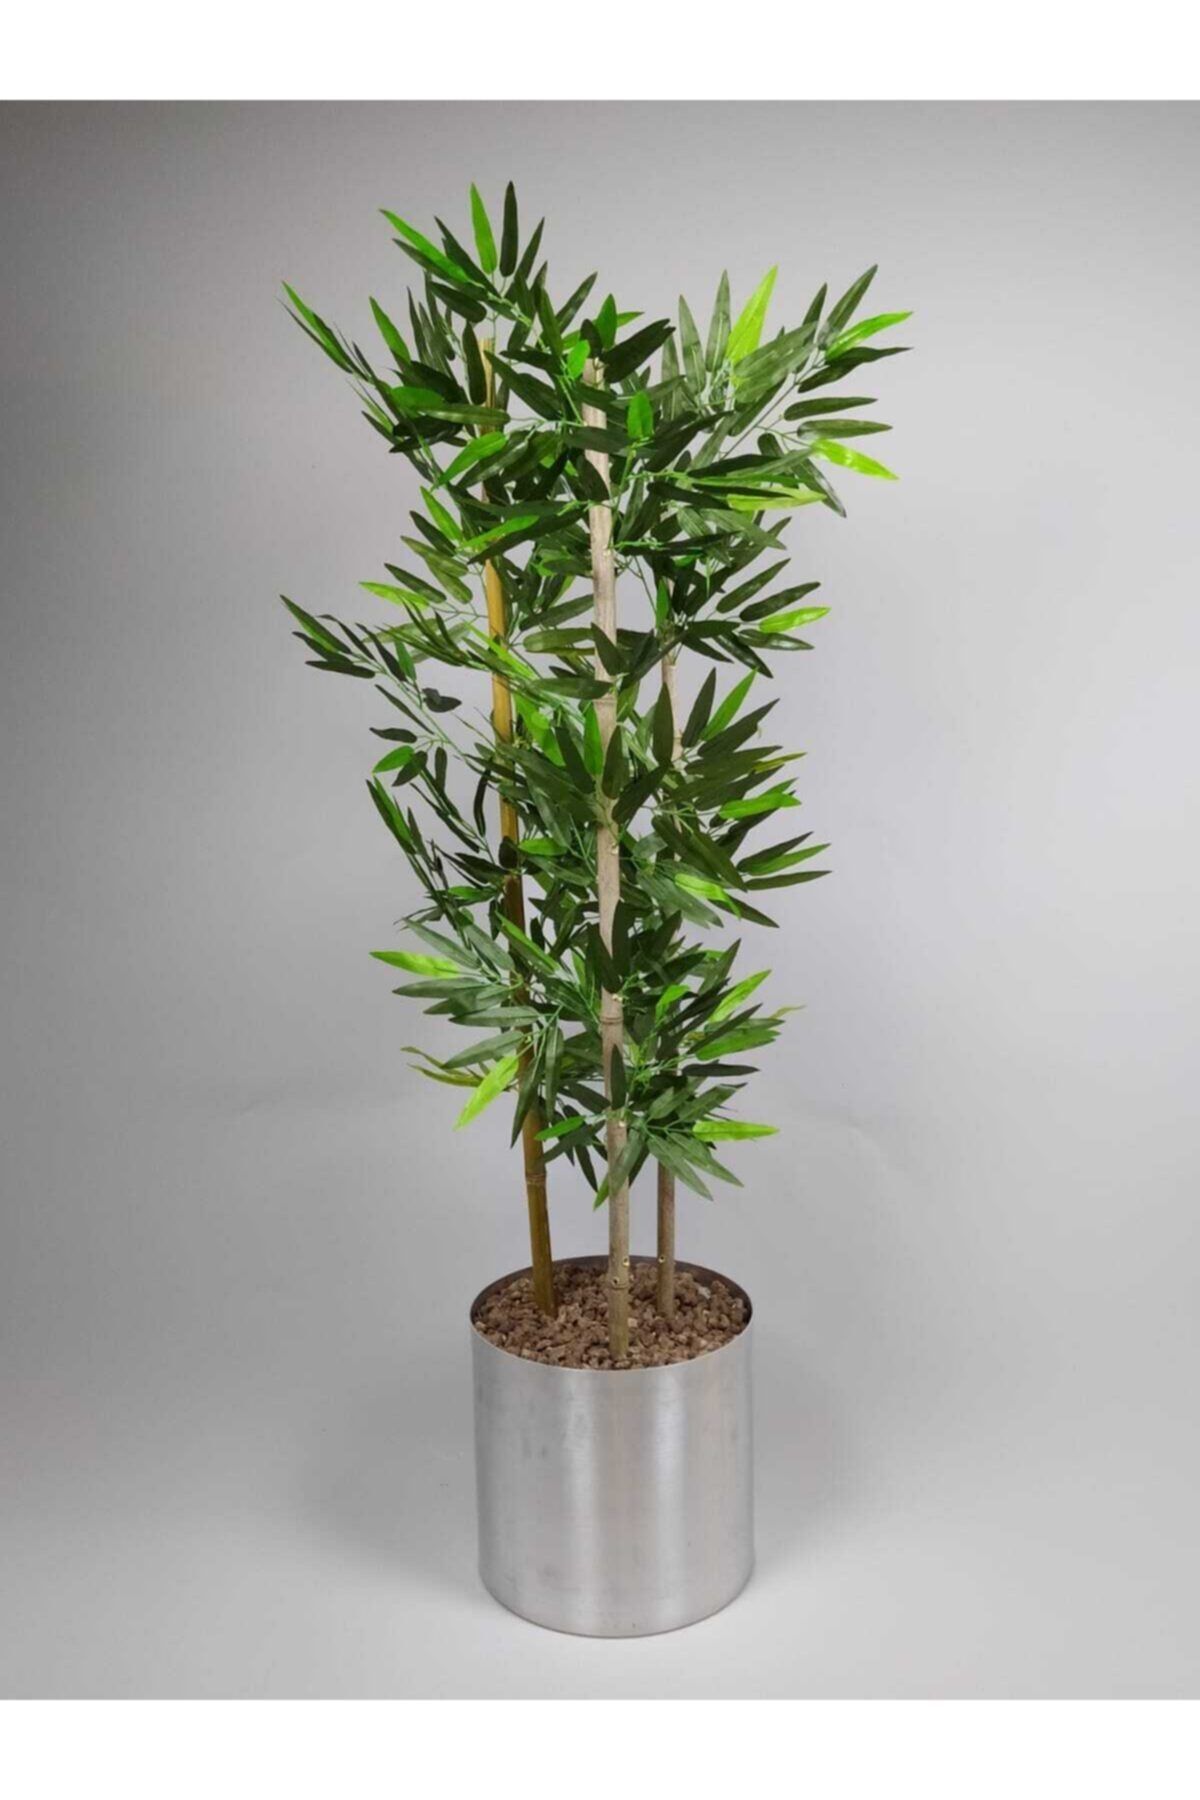 Kibrithane Çiçek Kc511 Yuvarlak Metal Vazoda 3'lü El Işlemesi Kuru Yapay Dekoratif Bambu